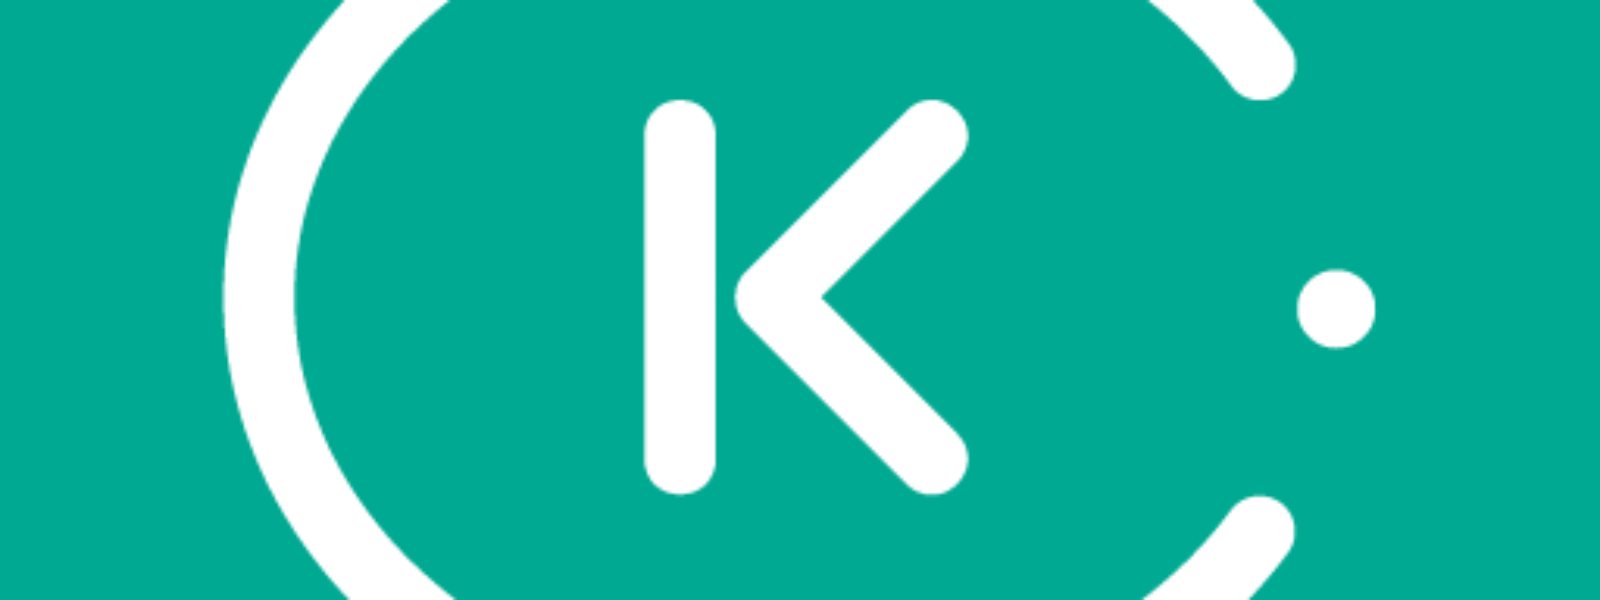 Kiwi.com – Bilete de avion4,8star pentru Android | iOS